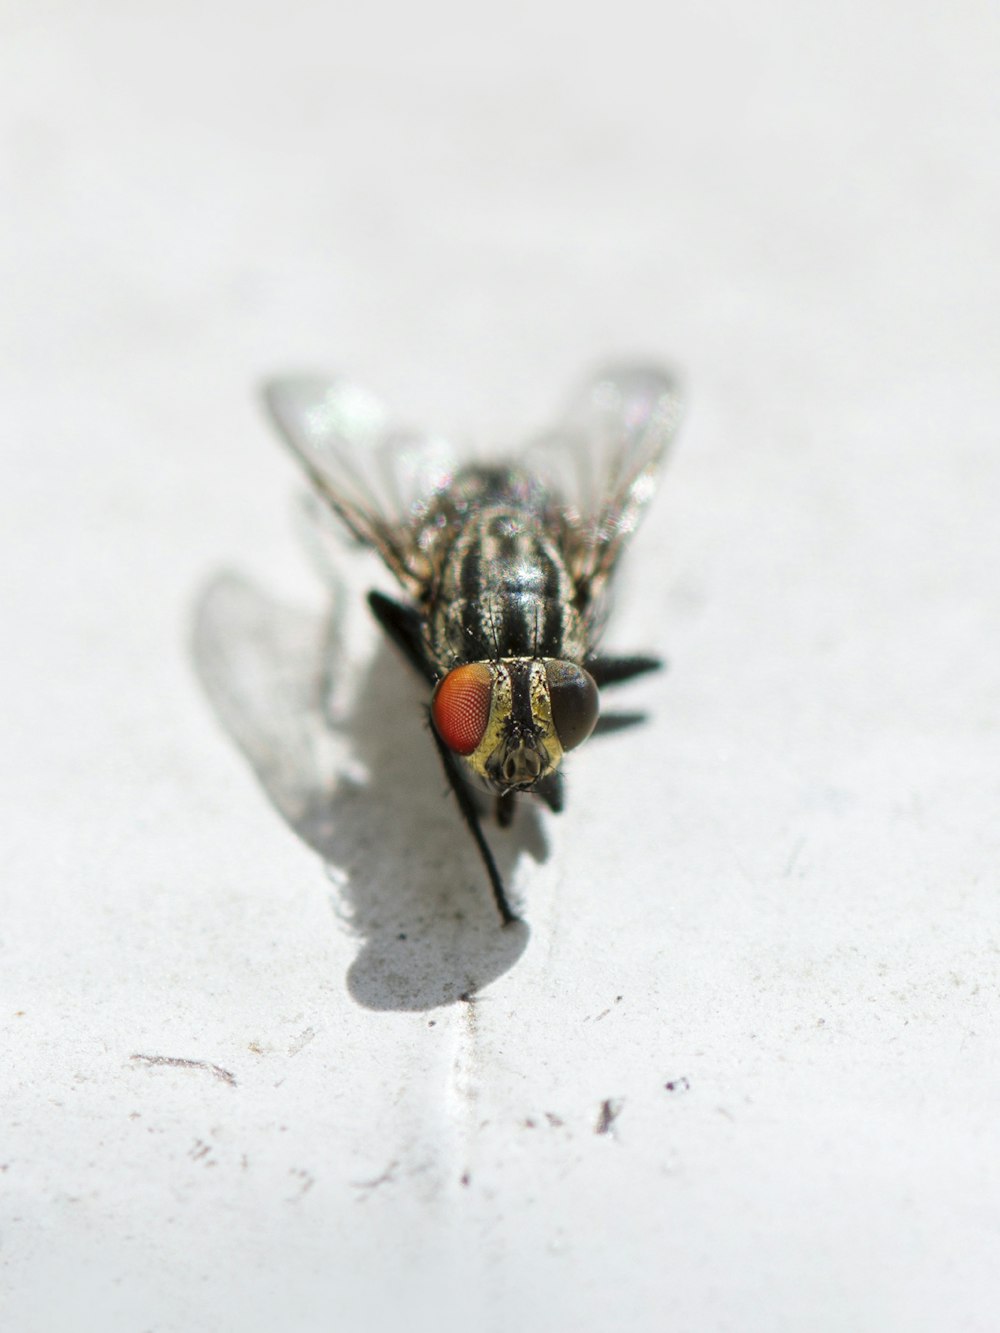 mosca negra y gris sobre superficie blanca